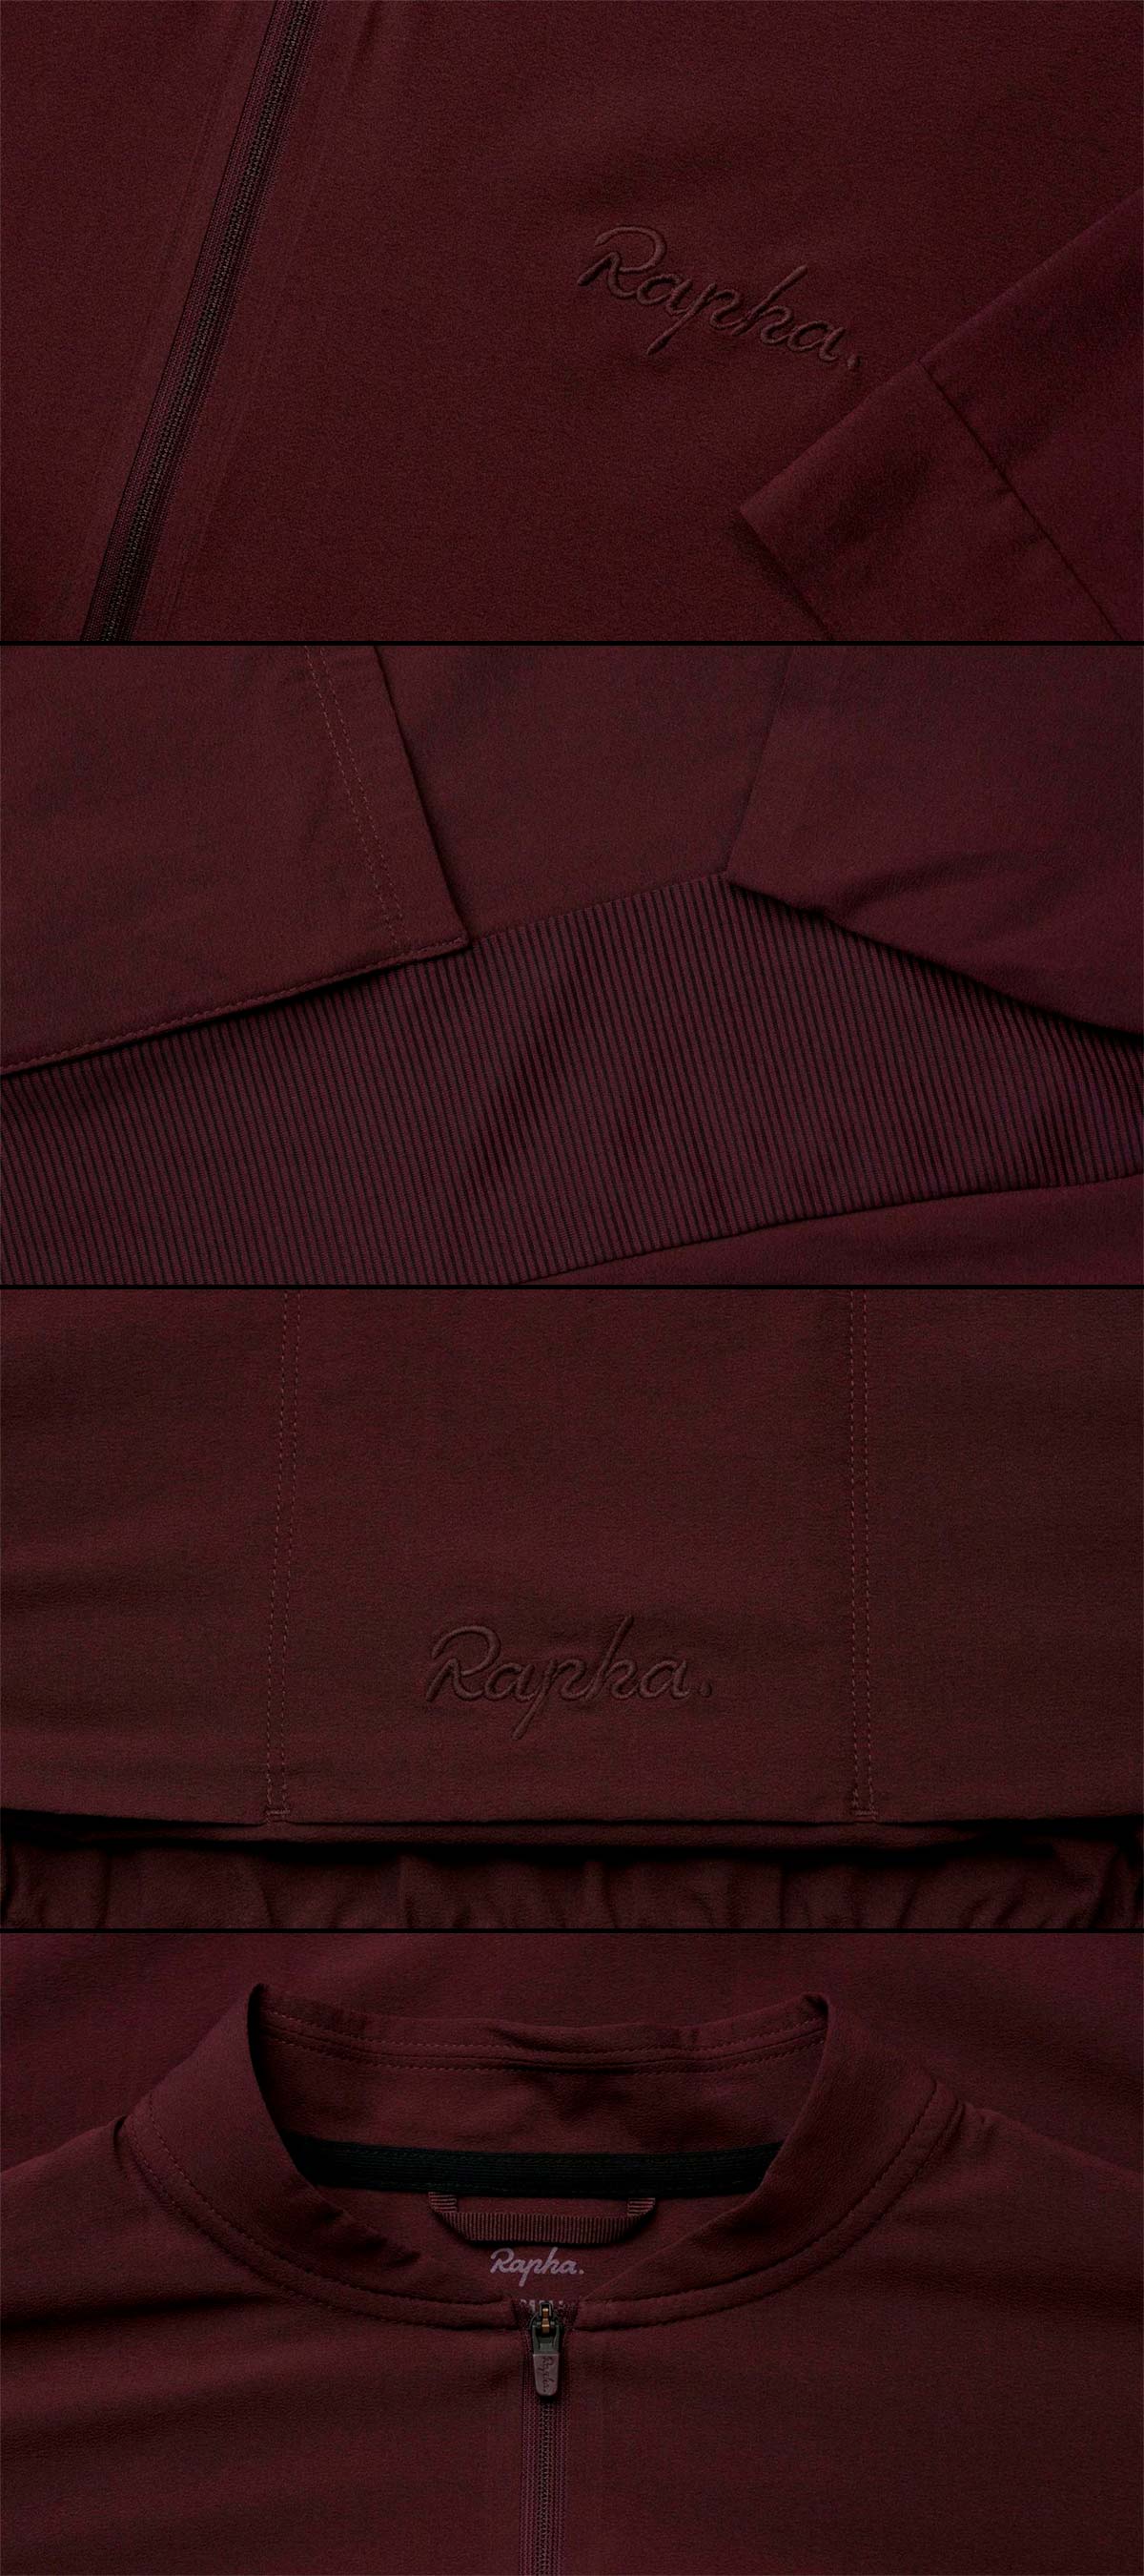 En TodoMountainBike: Rapha Silk Jersey, un maillot de seda que presume de ser el más ligero de la marca